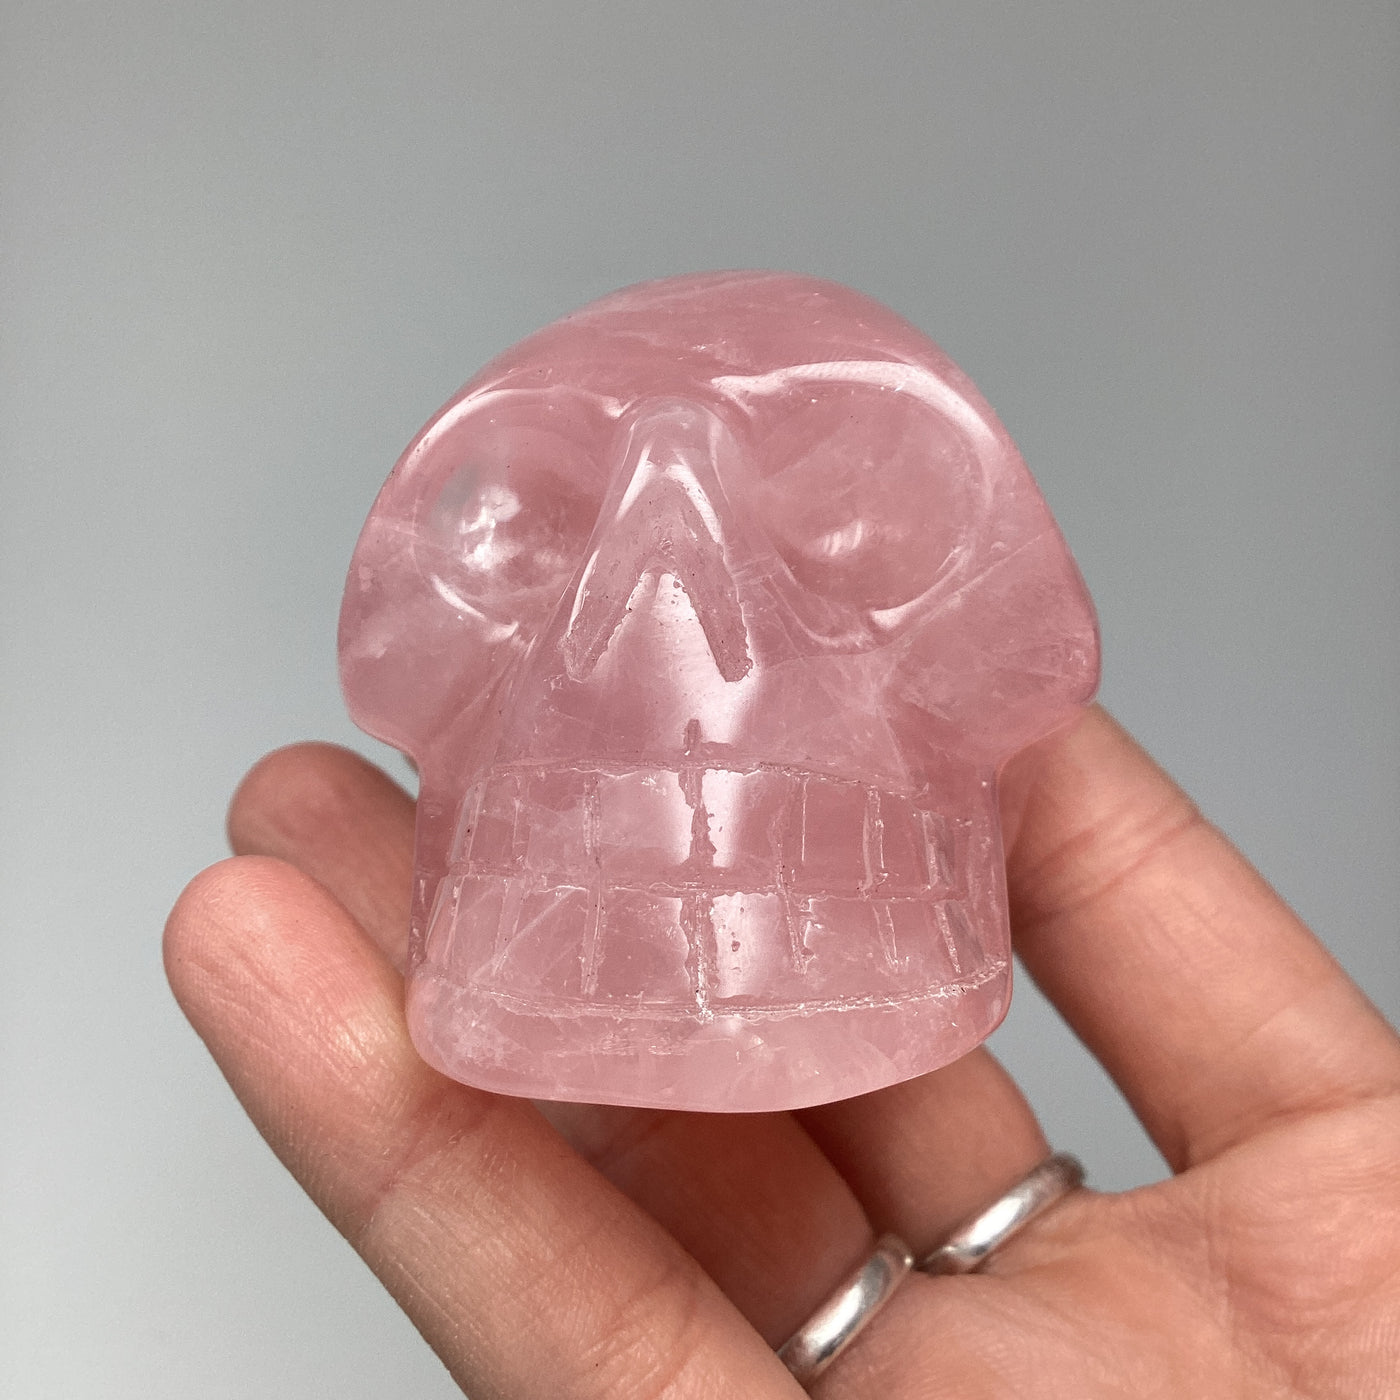 Carved Rose Quartz Skull